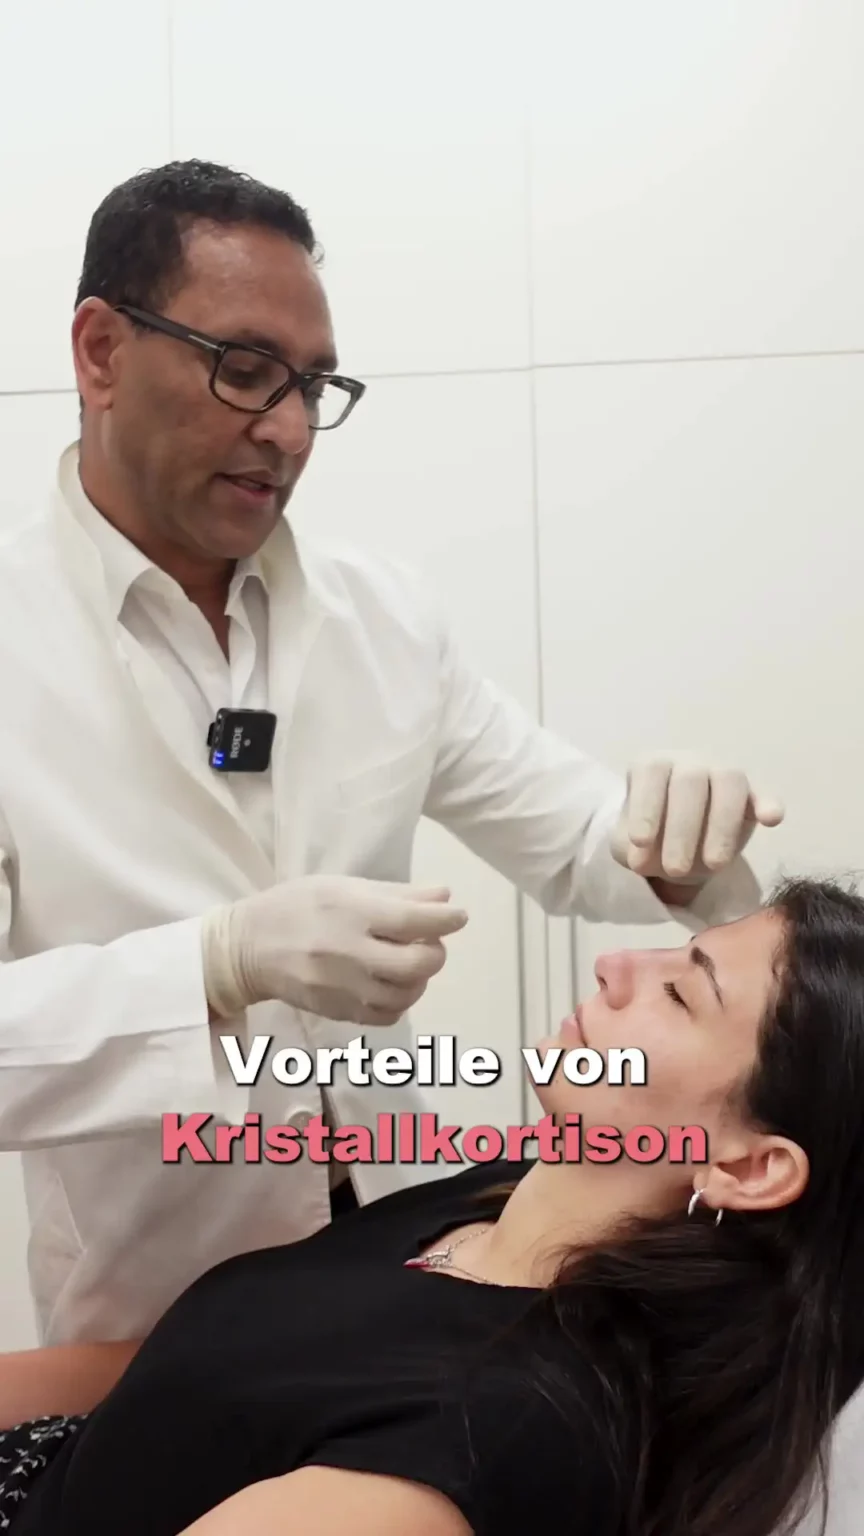 Aufnahme von Herr Elzebair währen der Behandlung einer Patientin mit de, Text "Vorteile von Kristallkortison".